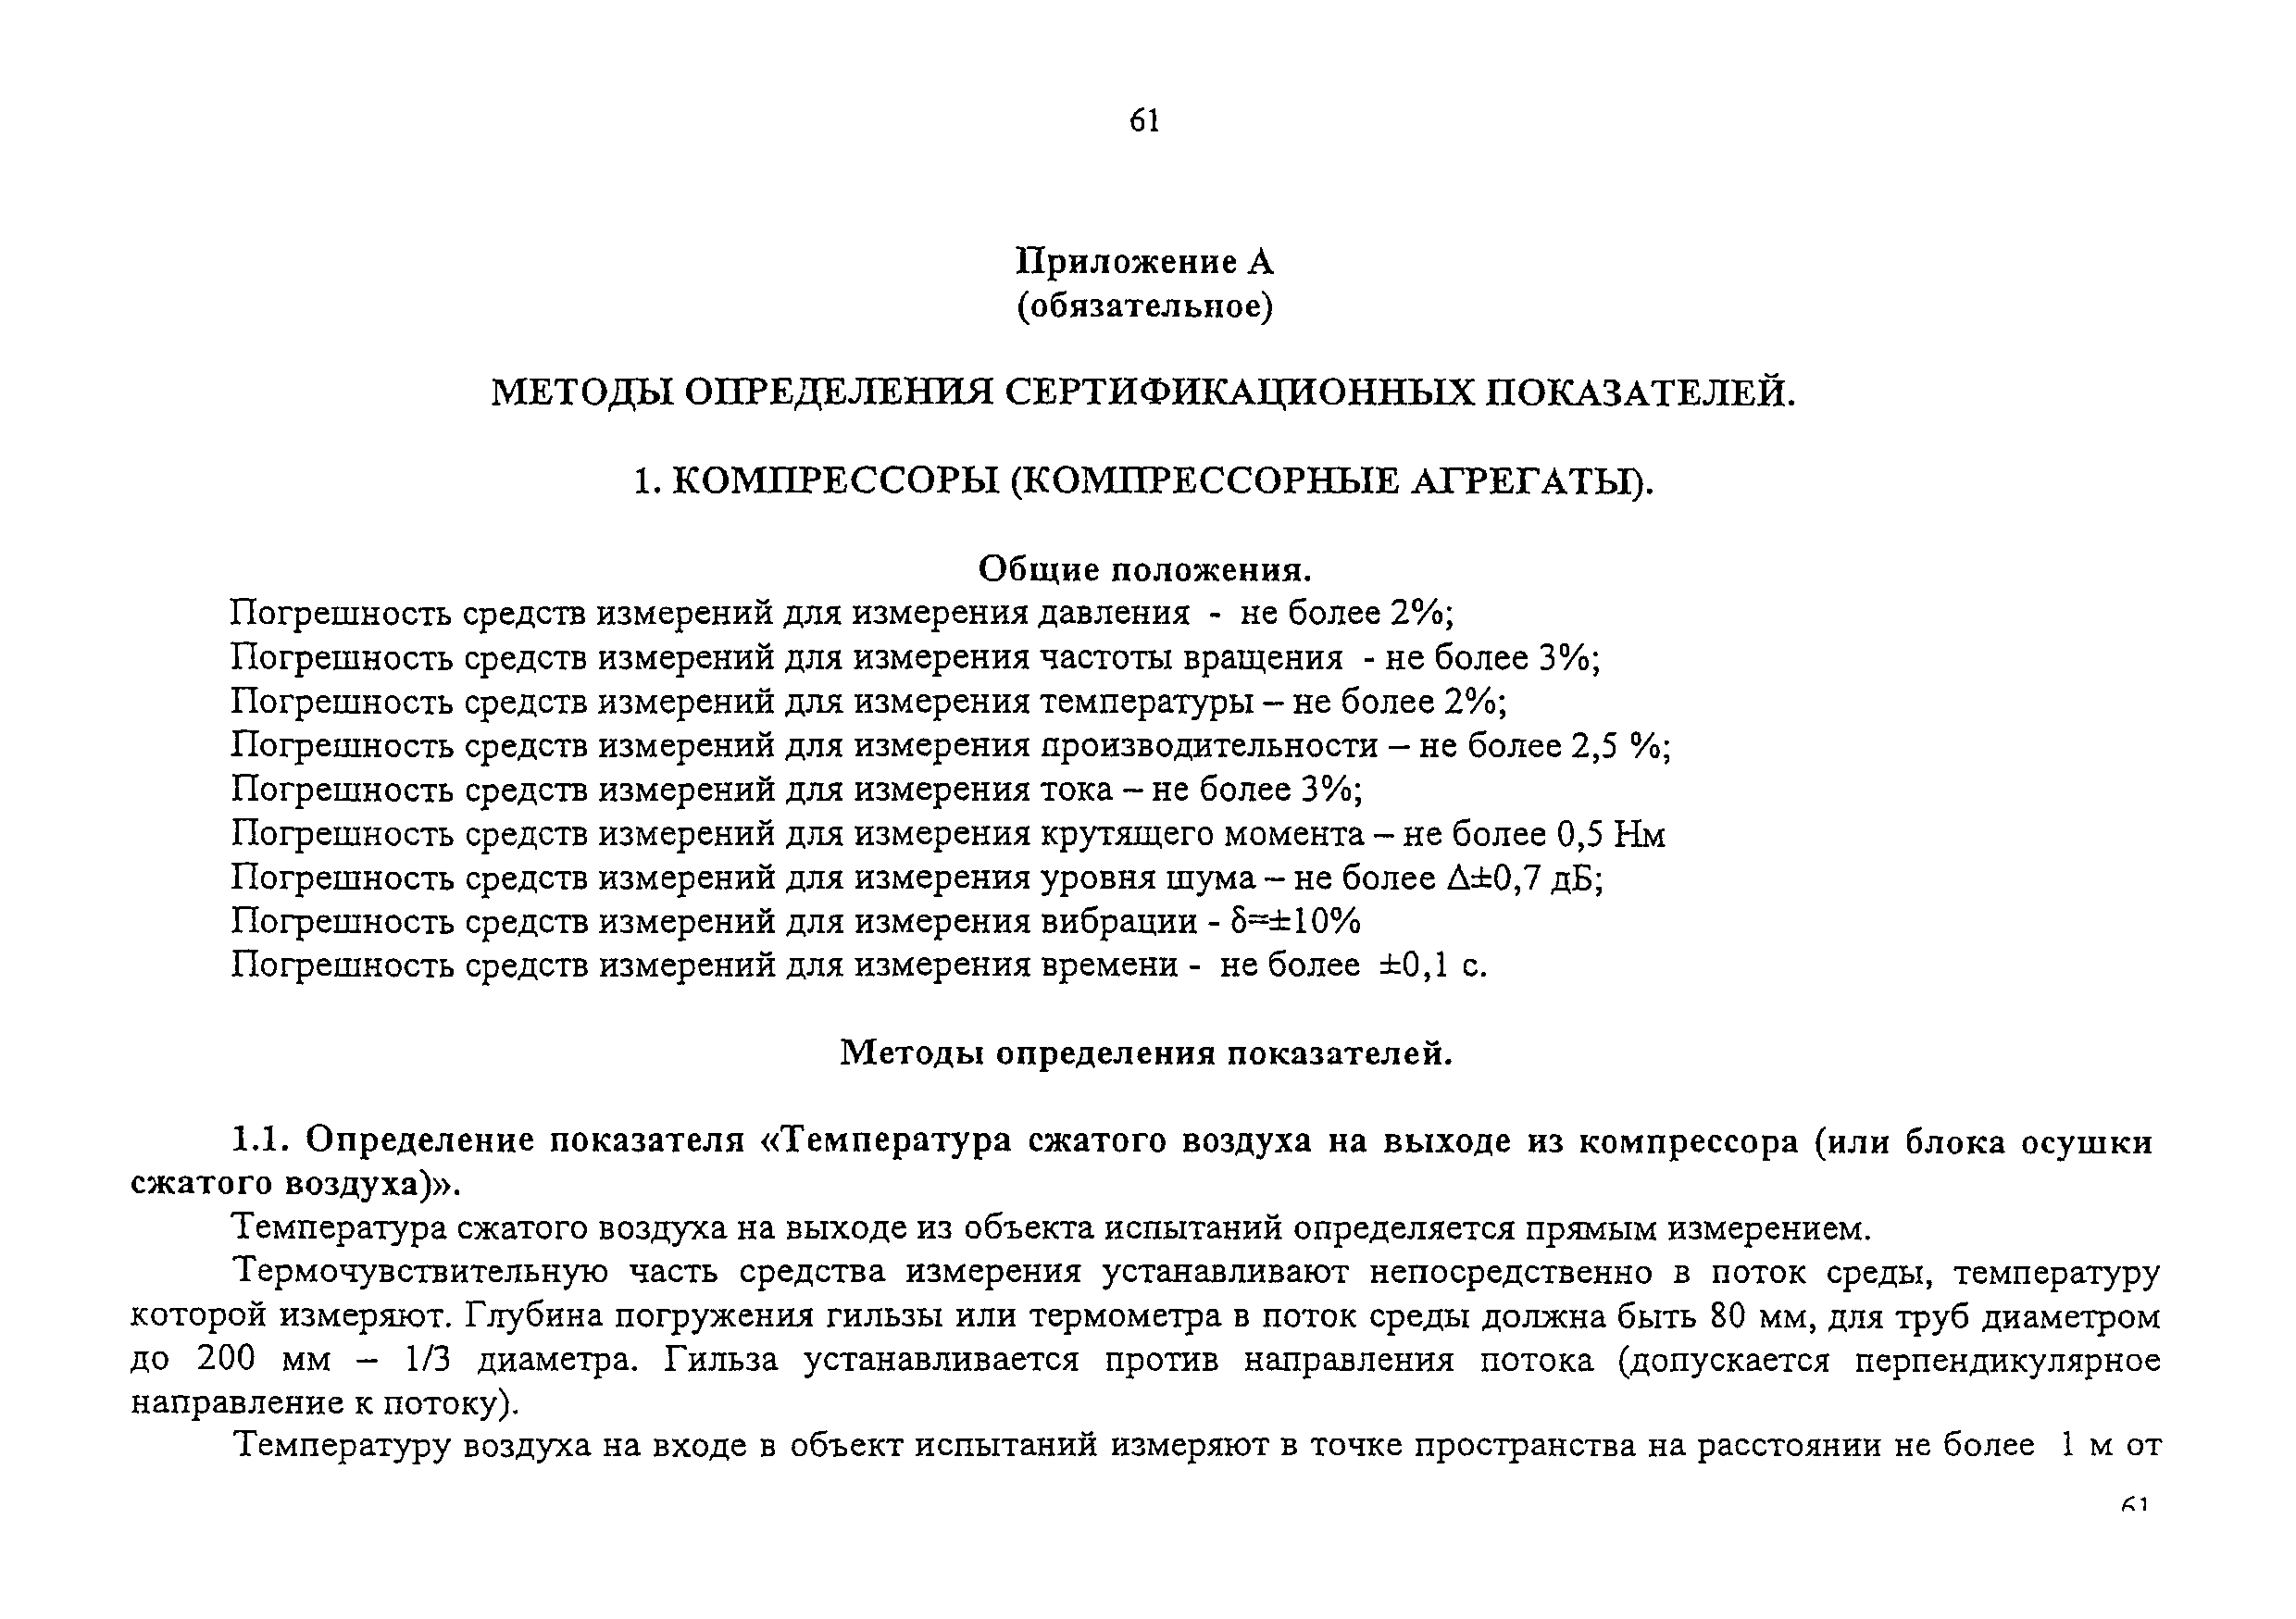 Изменение от 11.02.2009